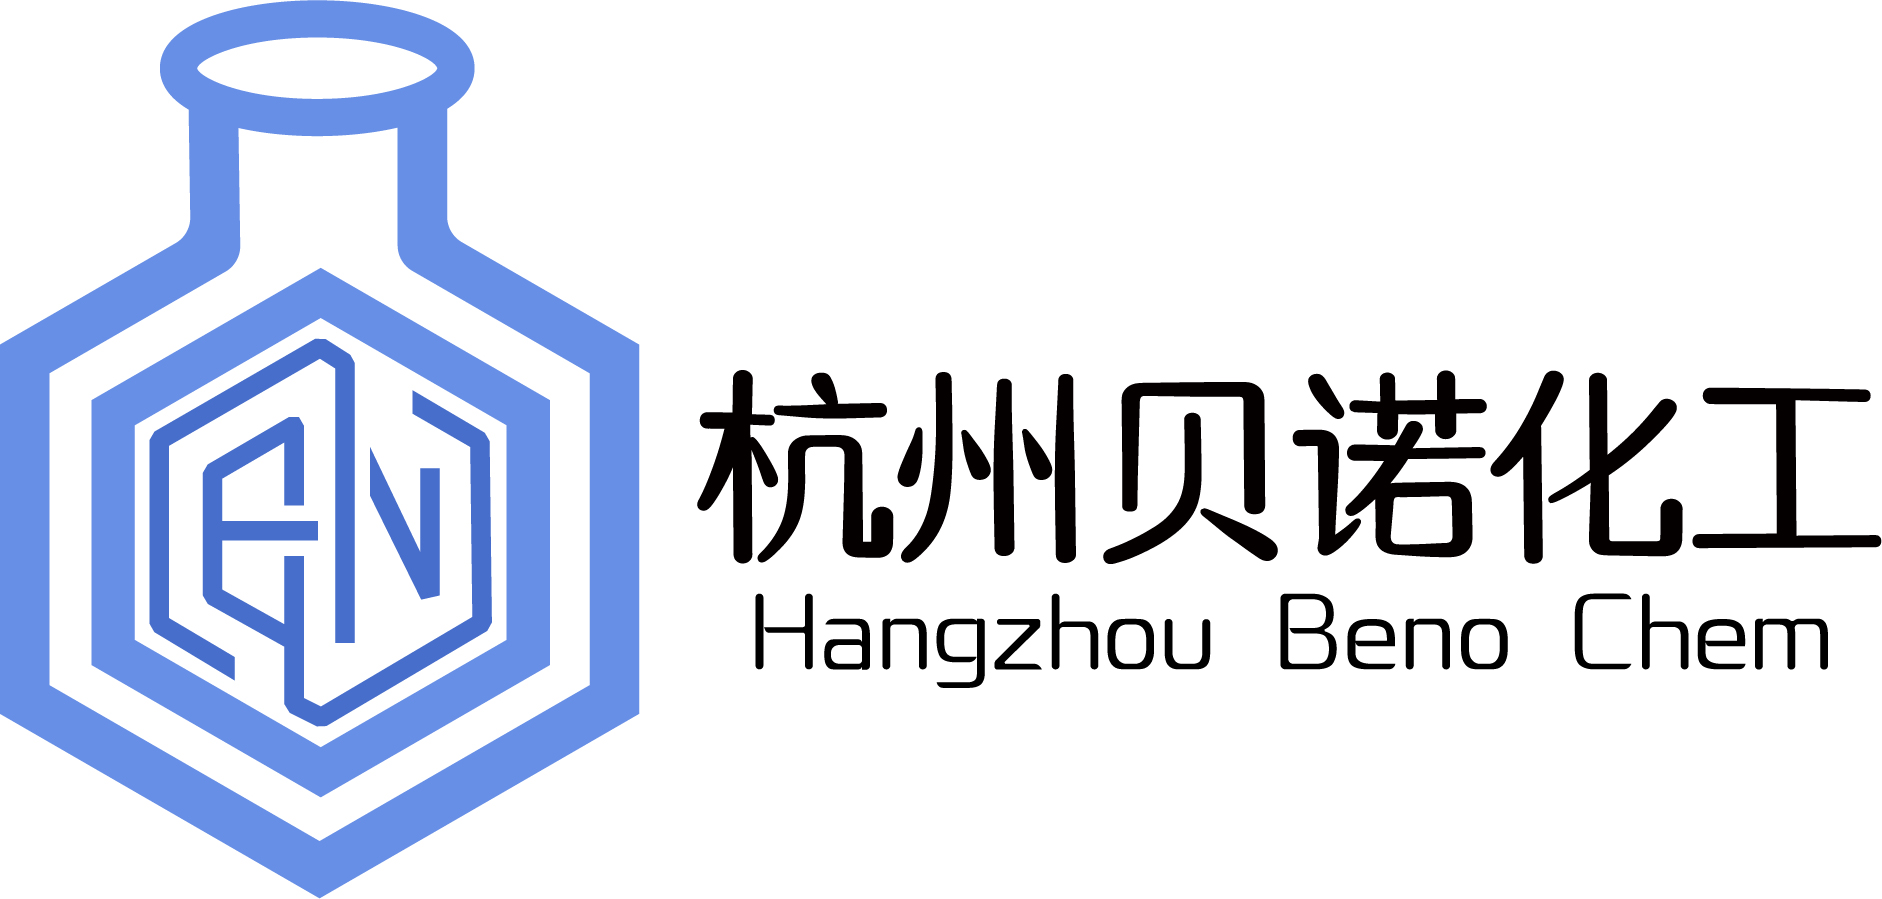 杭州贝诺化工有限公司logo